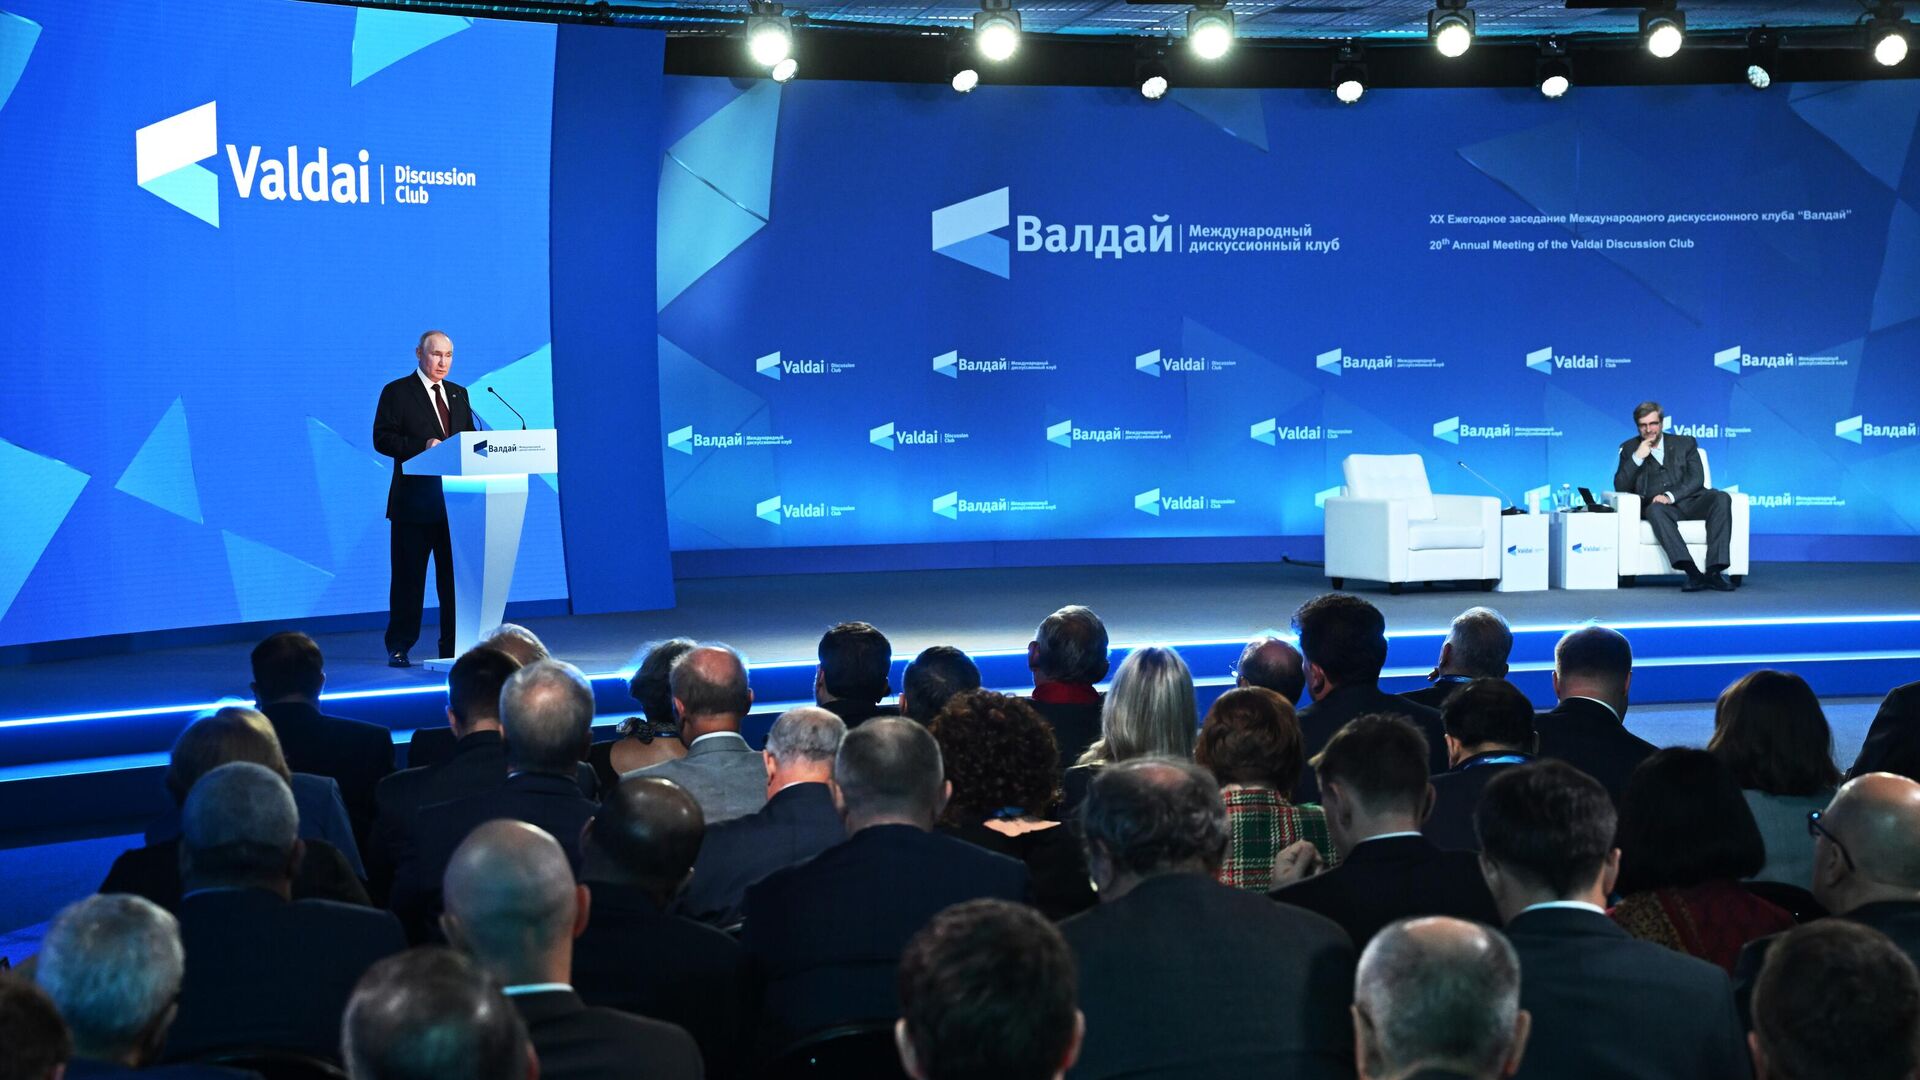 Медведчук: Путин представил на "Валдае" систему современного мироустройства